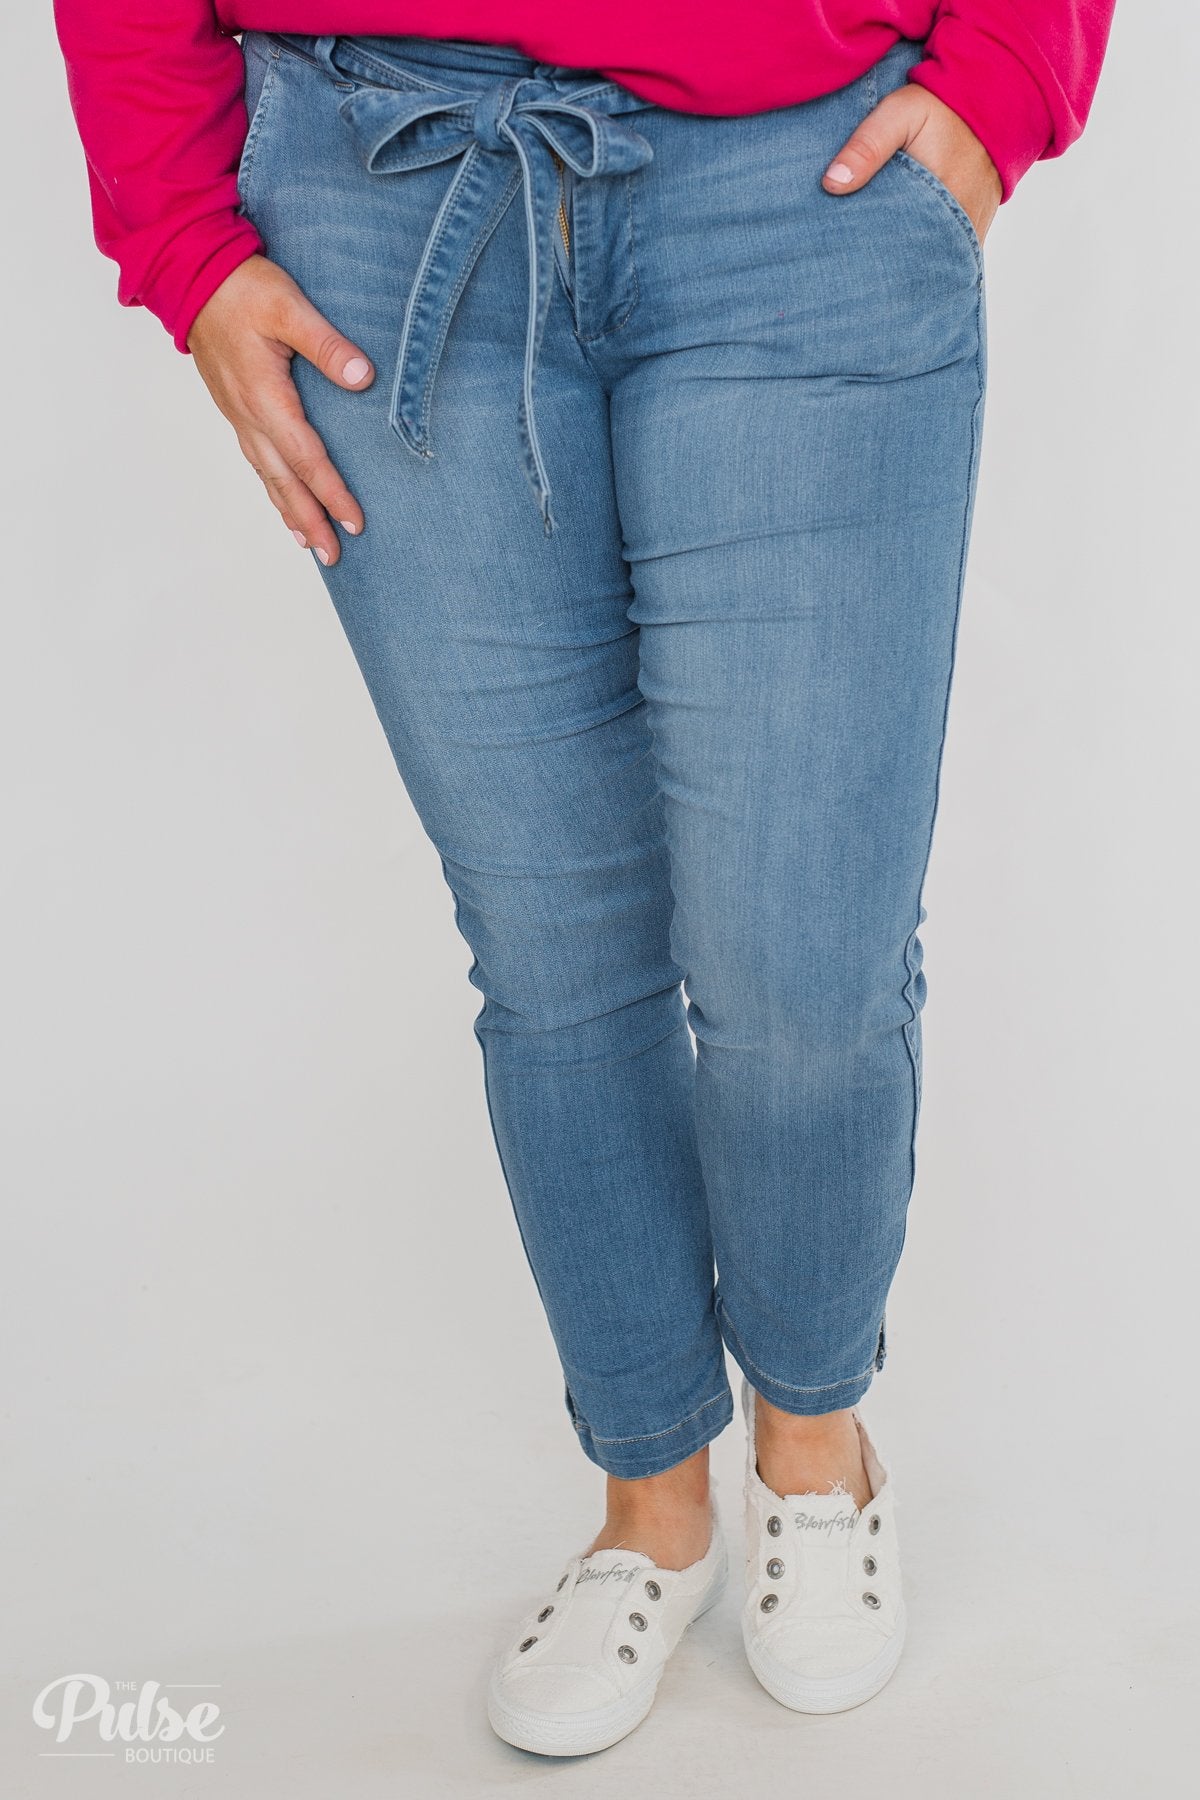 Celebrity Pink Belt Jeans- Kingston Wash